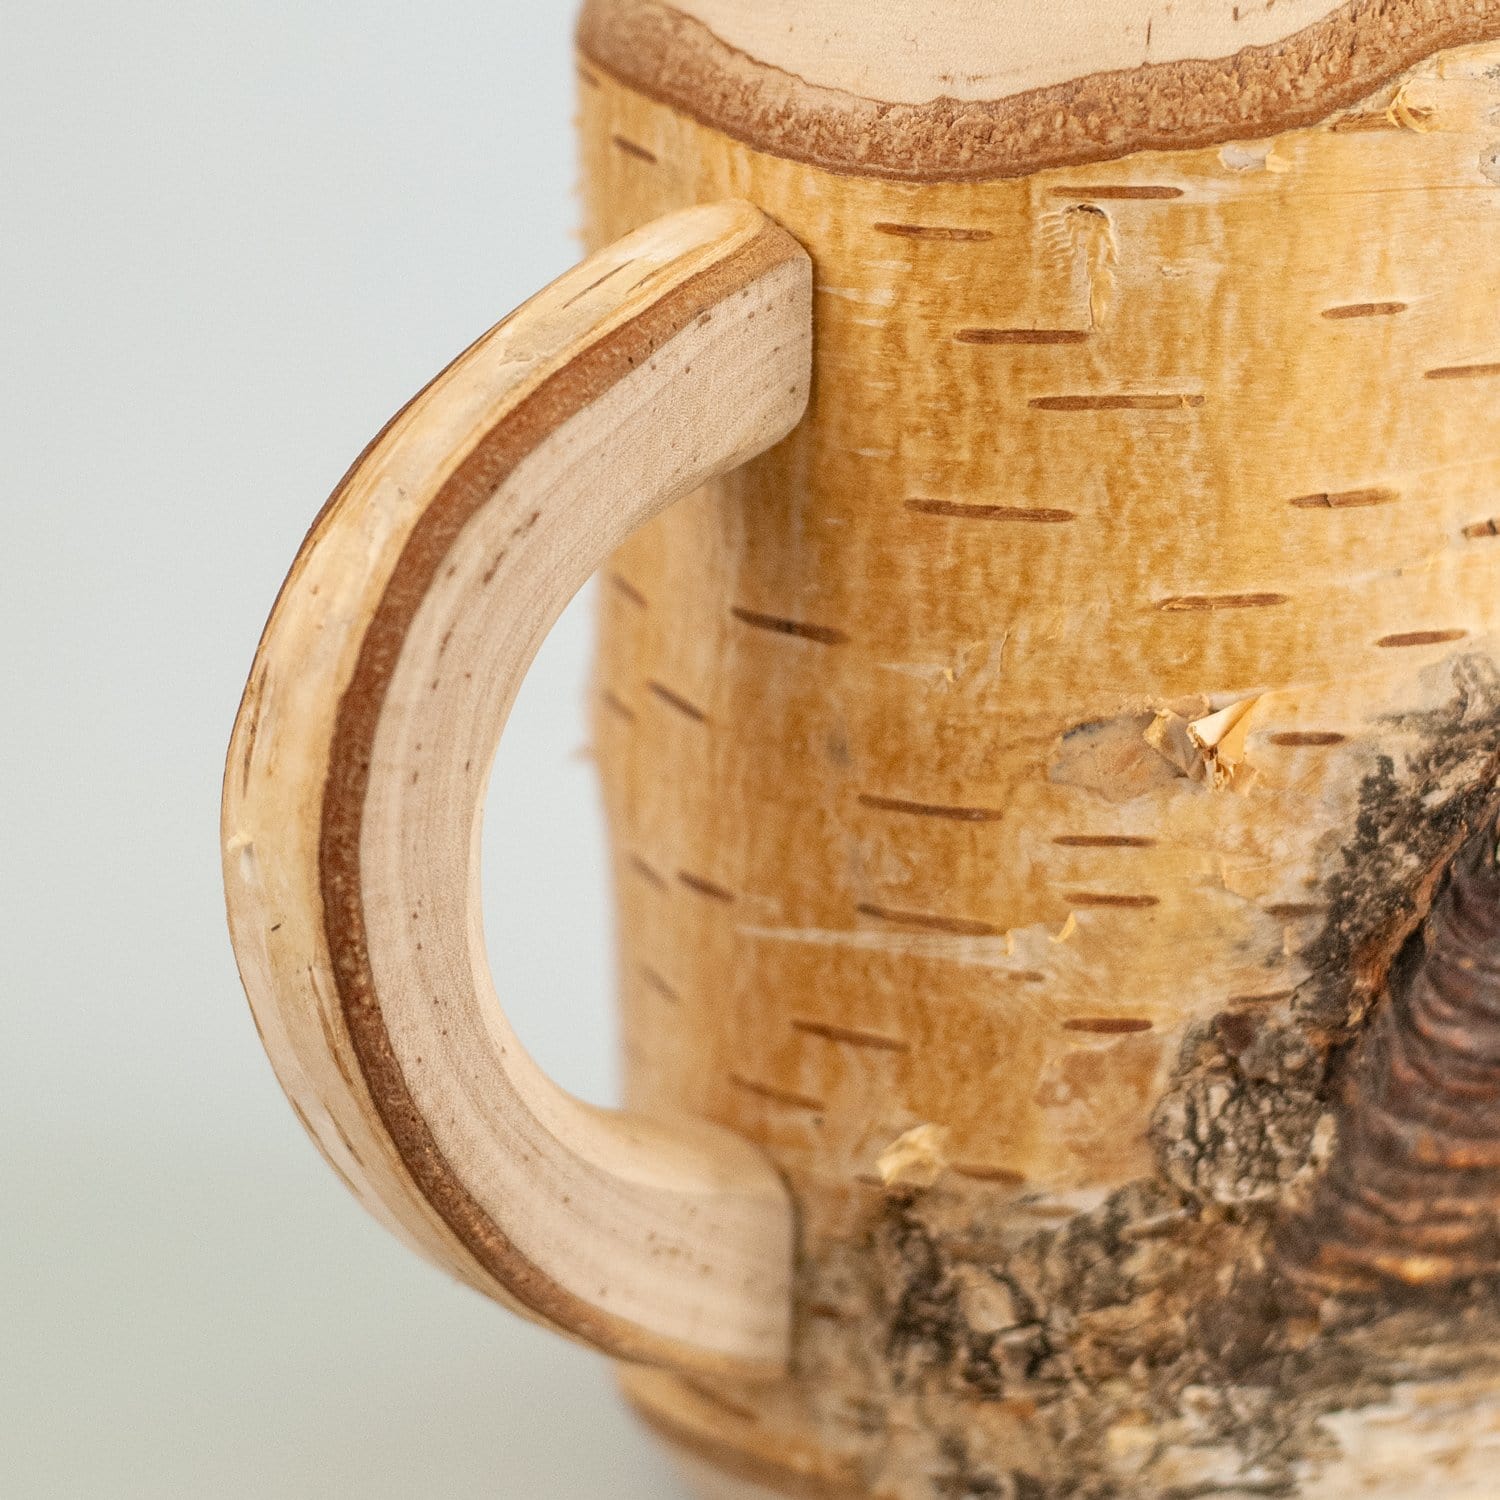 Holz-Bierkrug mit Gravur - Bierglas - Holzbierkrug mit Wunschname - Naturprodukt - Männergeschenk